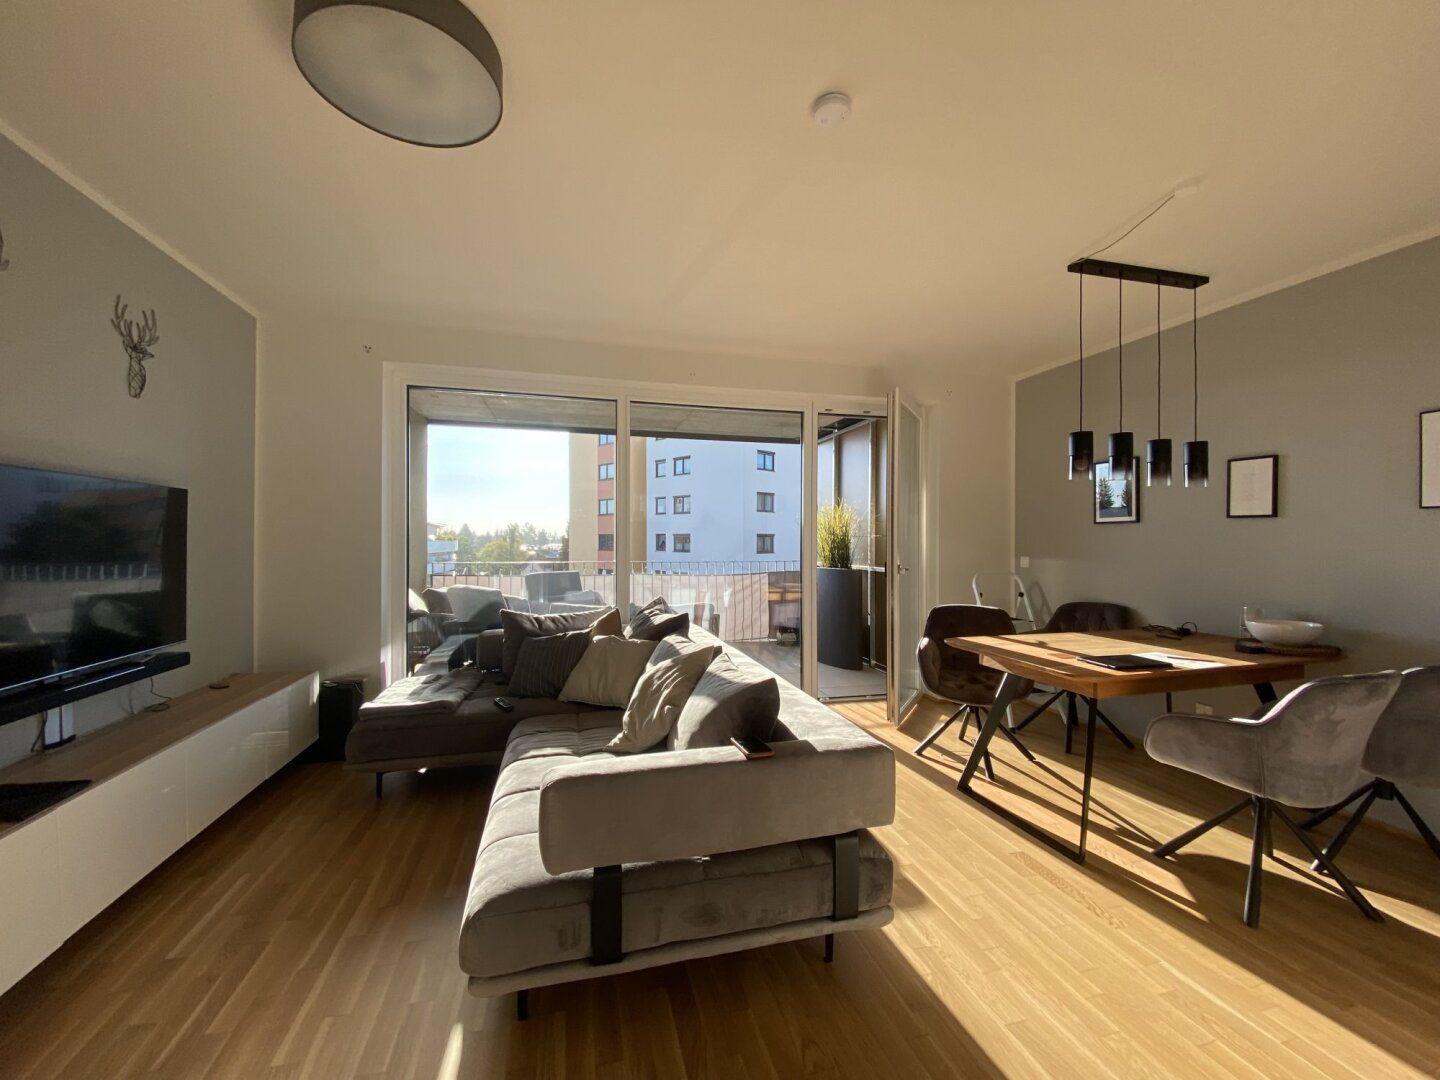 PROVISIONSFREI - Moderne 3-Zimmer-Wohnung mit großzügigem Balkon in ruhiger Lage - mit KFZ-Tiefgaragenabstellplatz